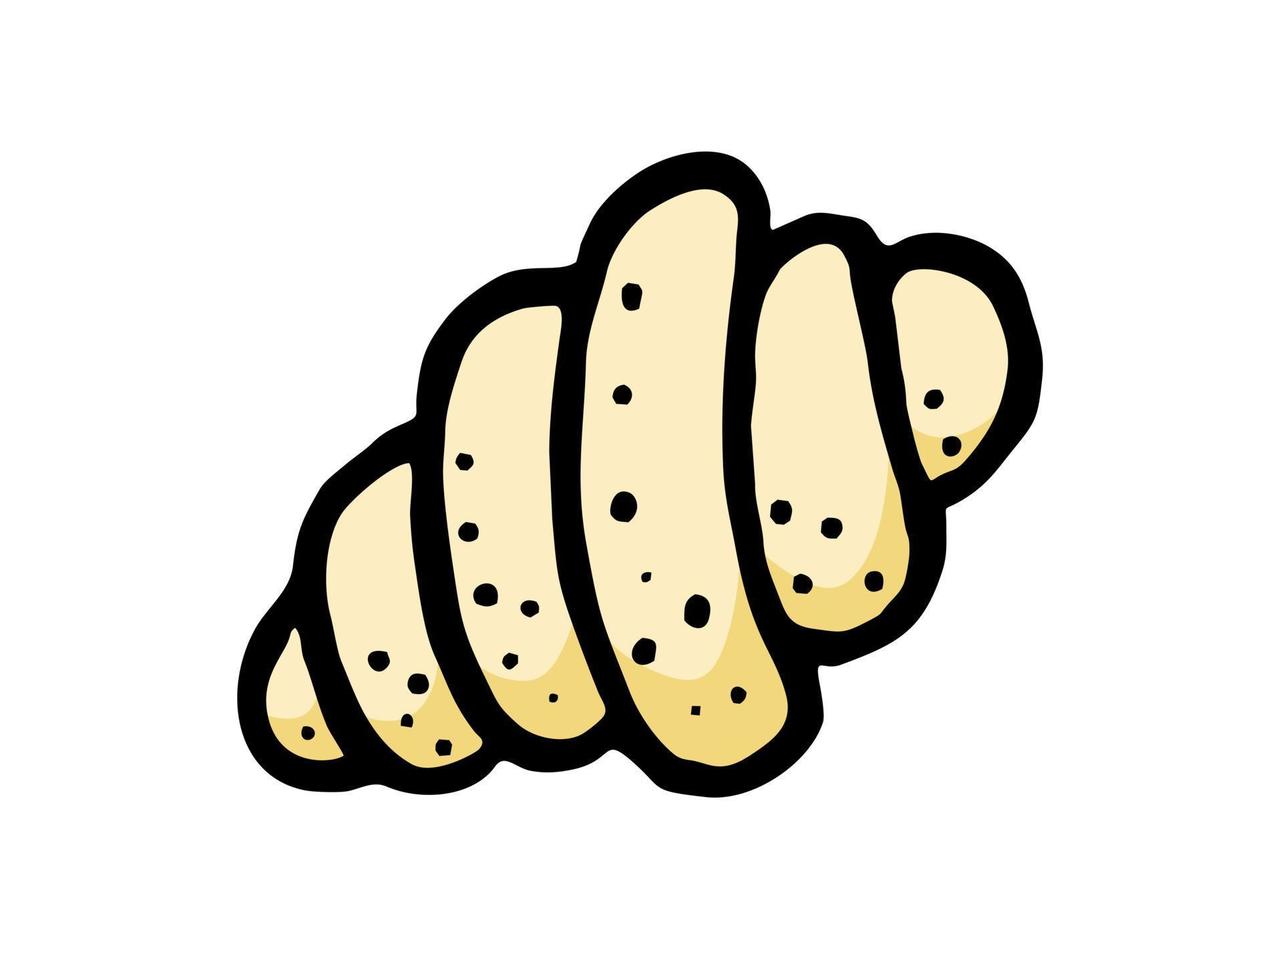 croissant är en handritad bagerielementvektor i stil med en doodle-skiss. för café- och bagerimenyer vektor